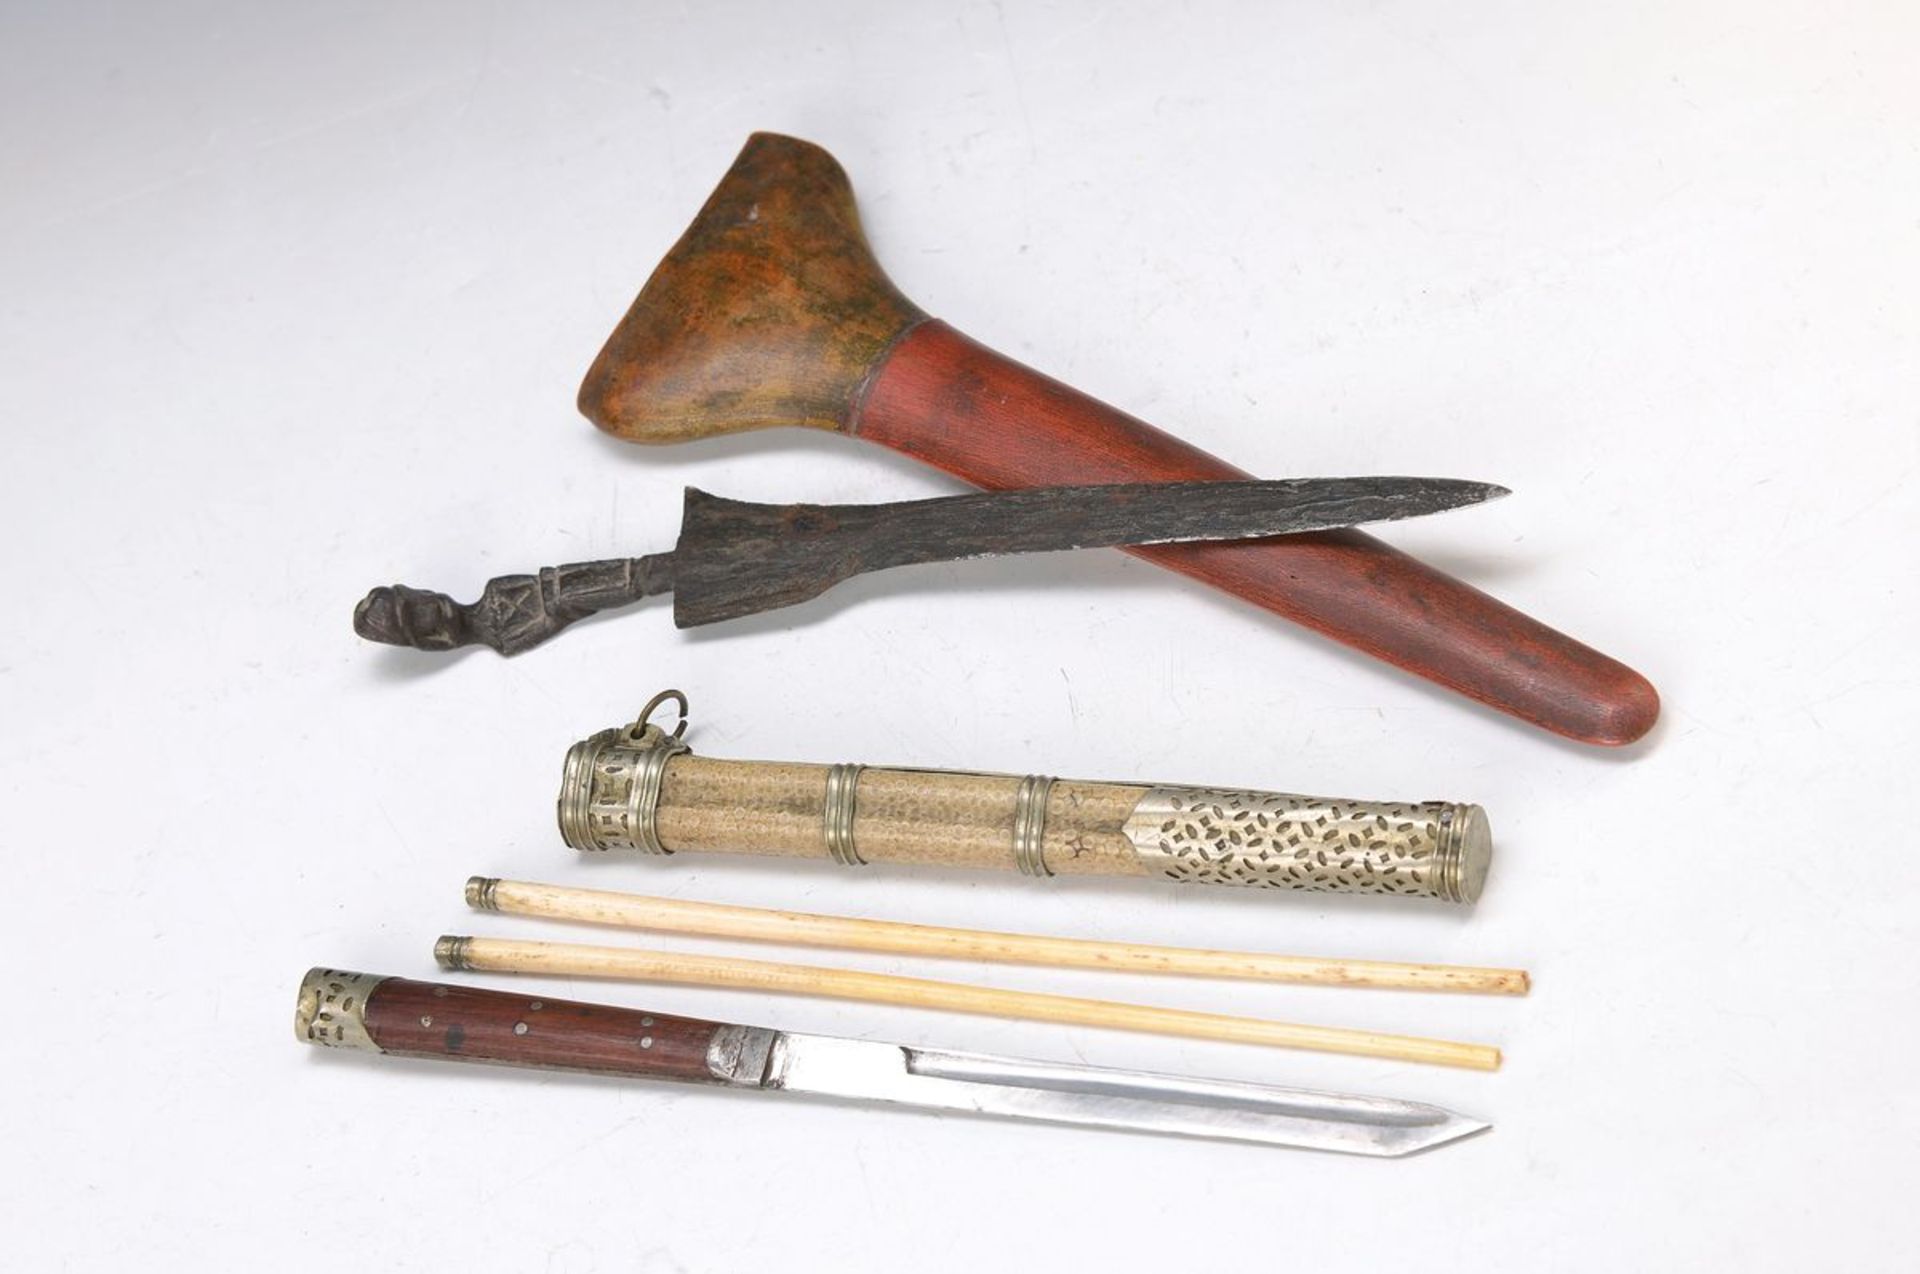 Essbesteck, Tibet, um 1900, gekehltes Messer, zwei Essstäbchen aus Bein, Etui mit Rochenhaut bezogen